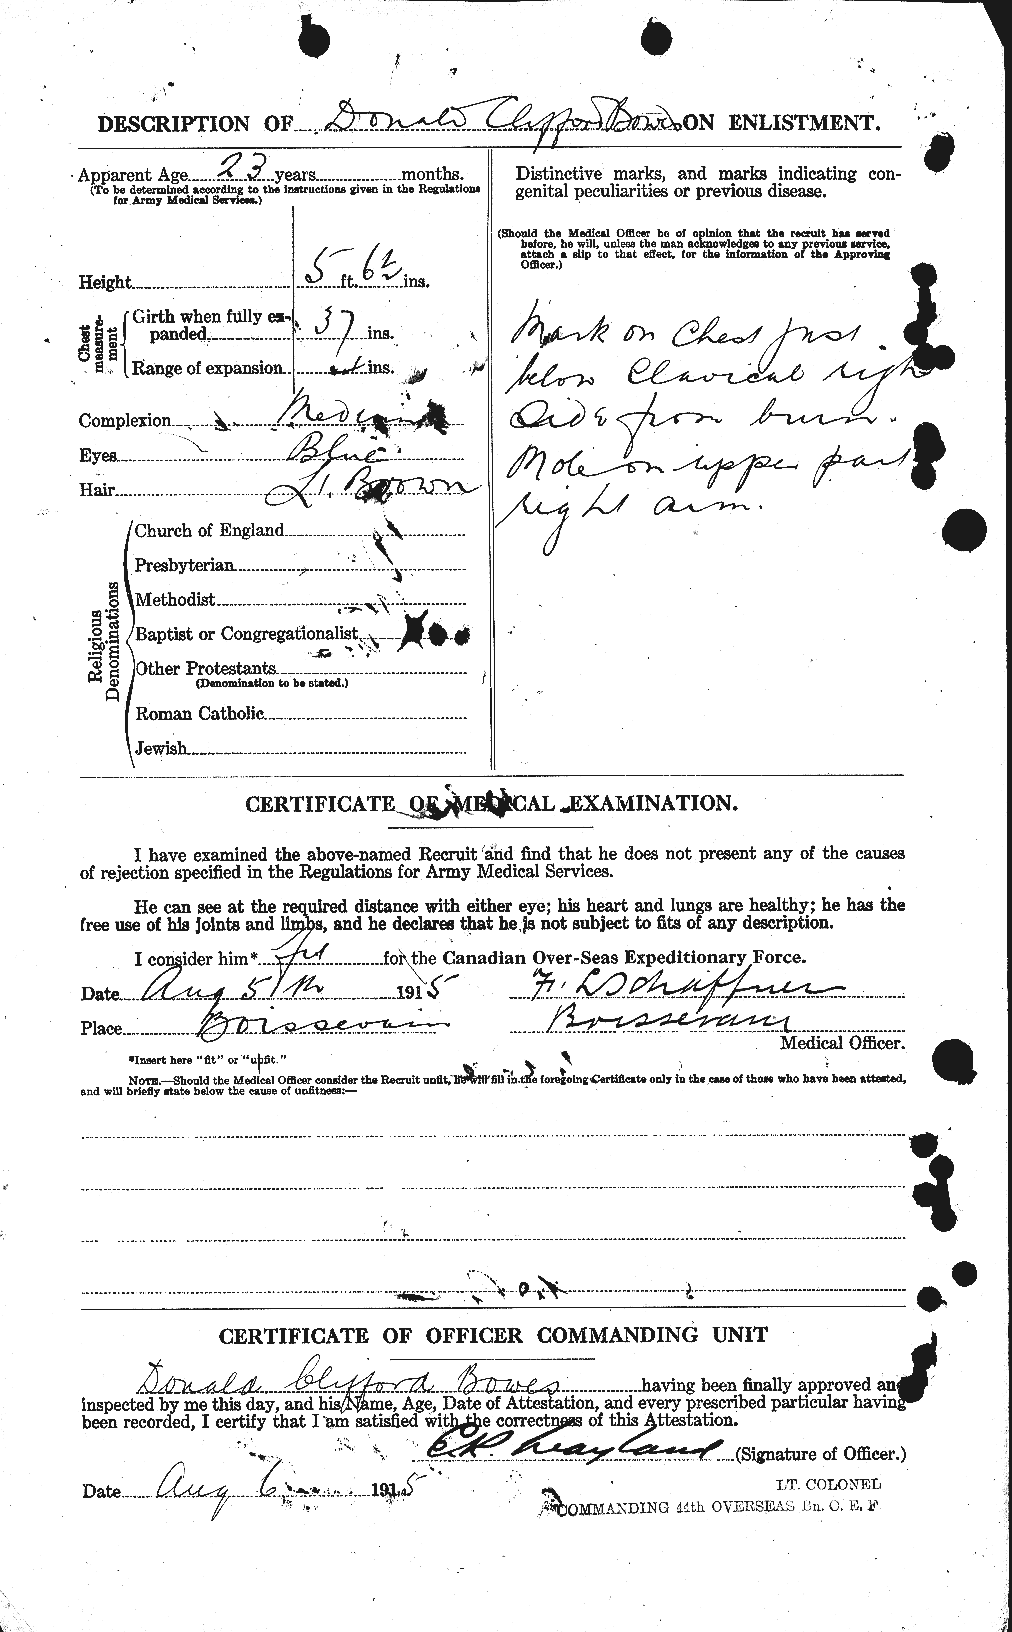 Dossiers du Personnel de la Première Guerre mondiale - CEC 253616b